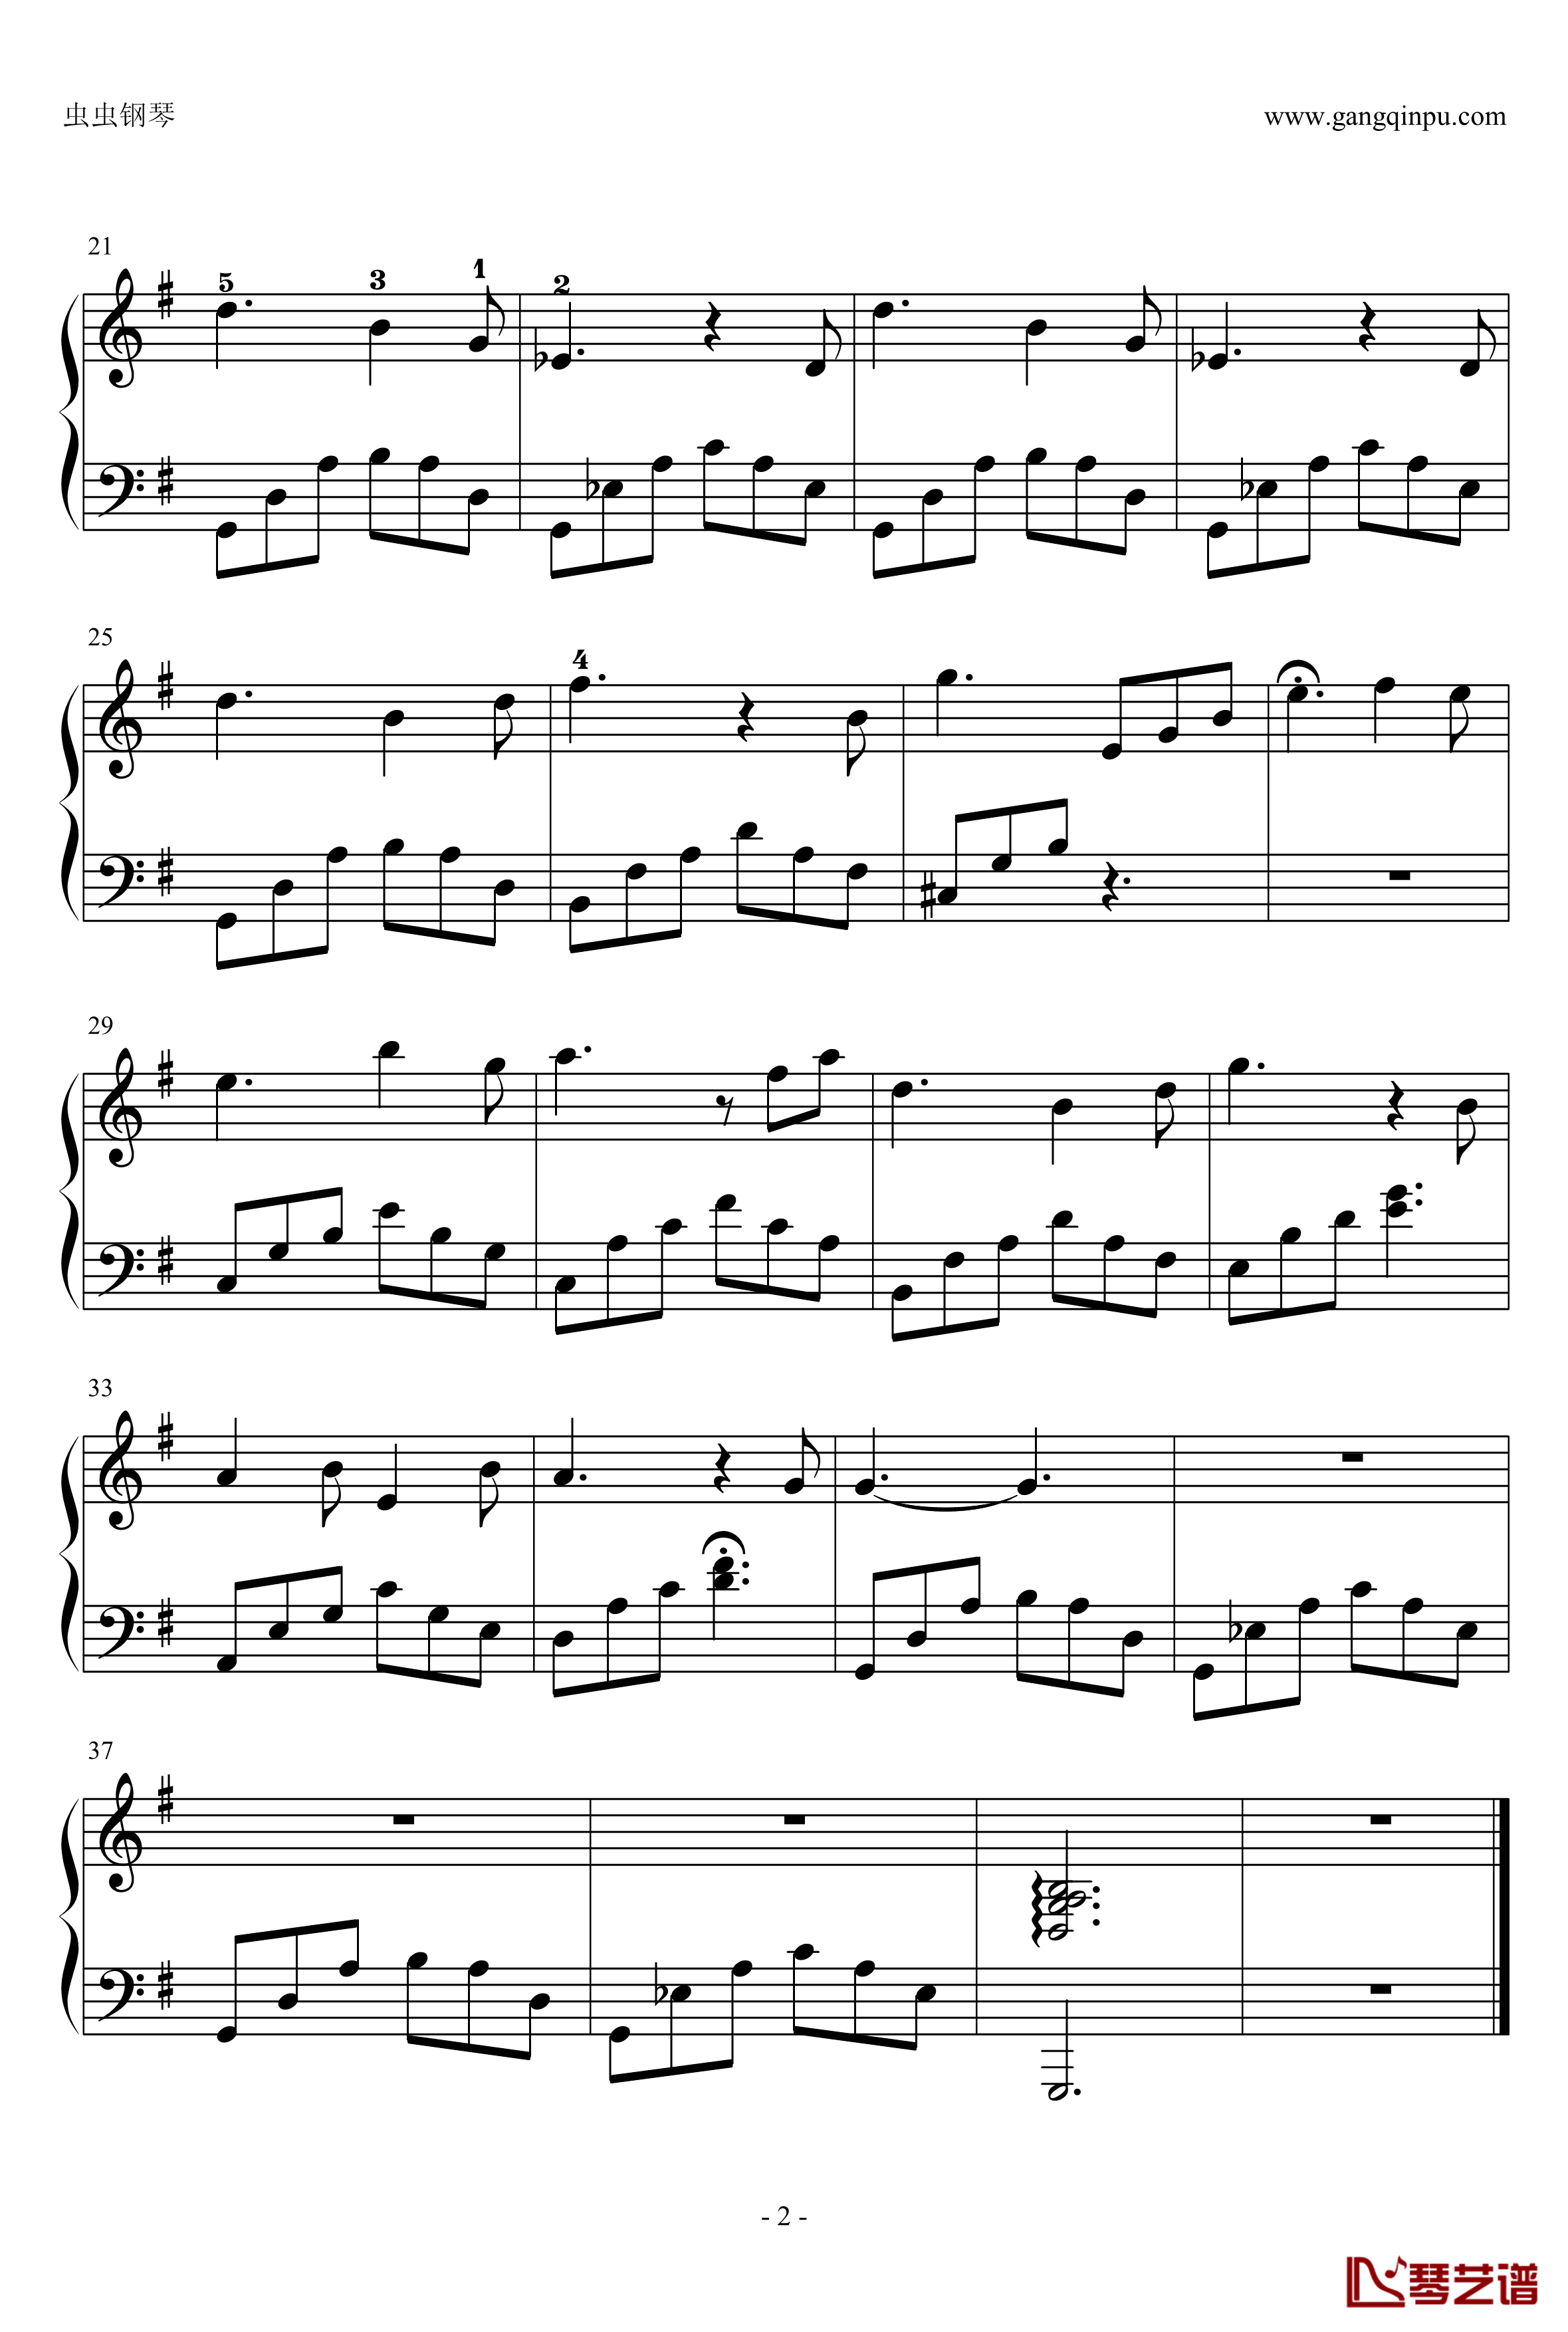 天台的月光钢琴谱-鸠玖独奏版-带指法-周杰伦2